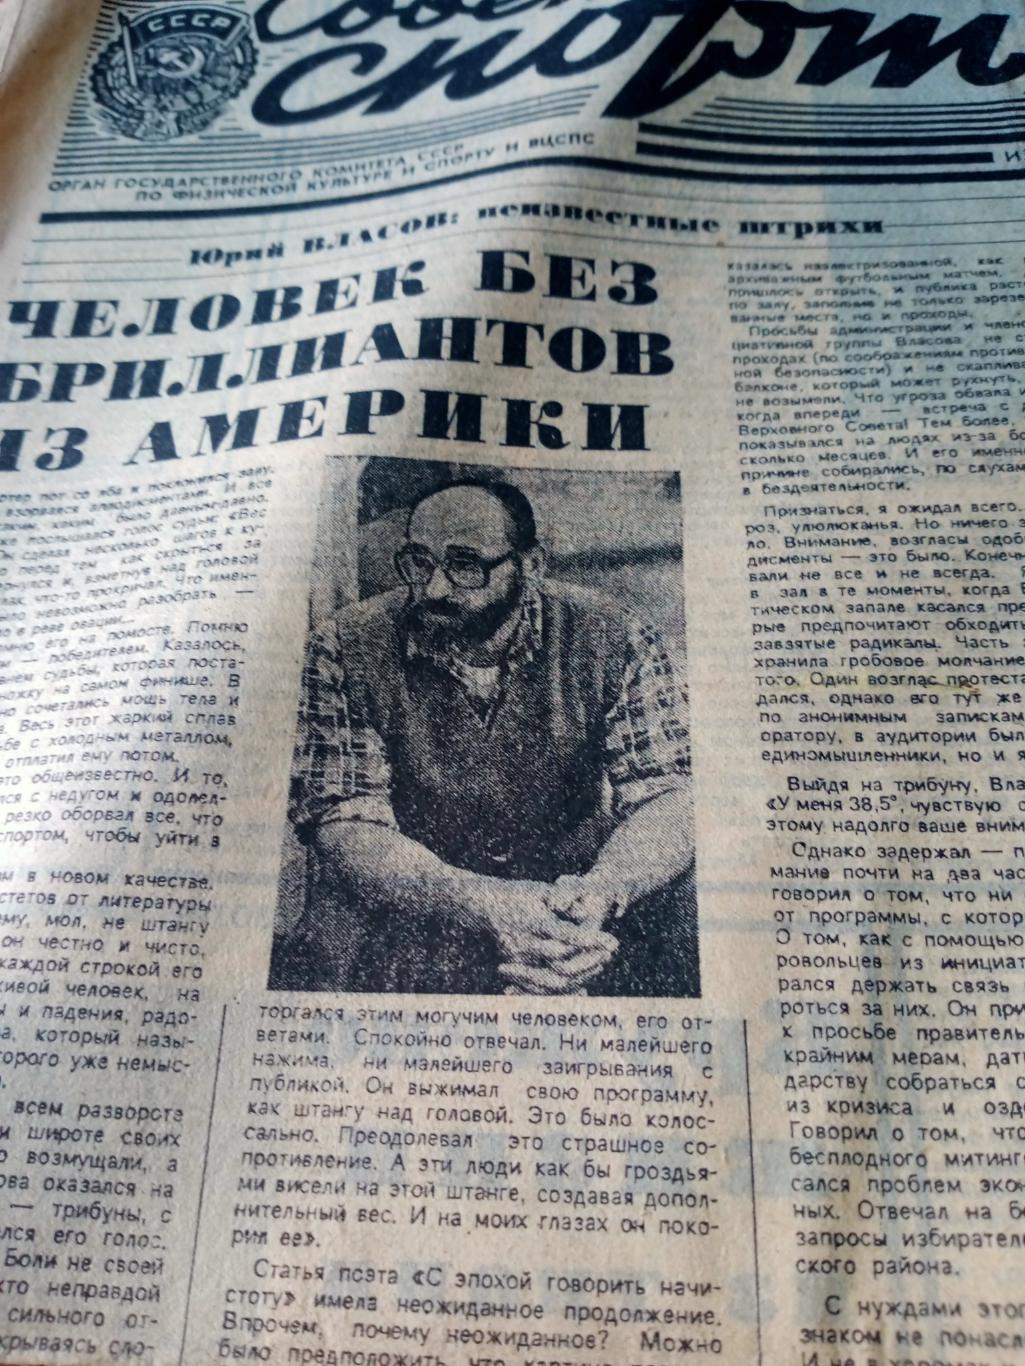 Ю.Власов: неизвестные штрихи. Советский спорт. 1989 год. 27 октября